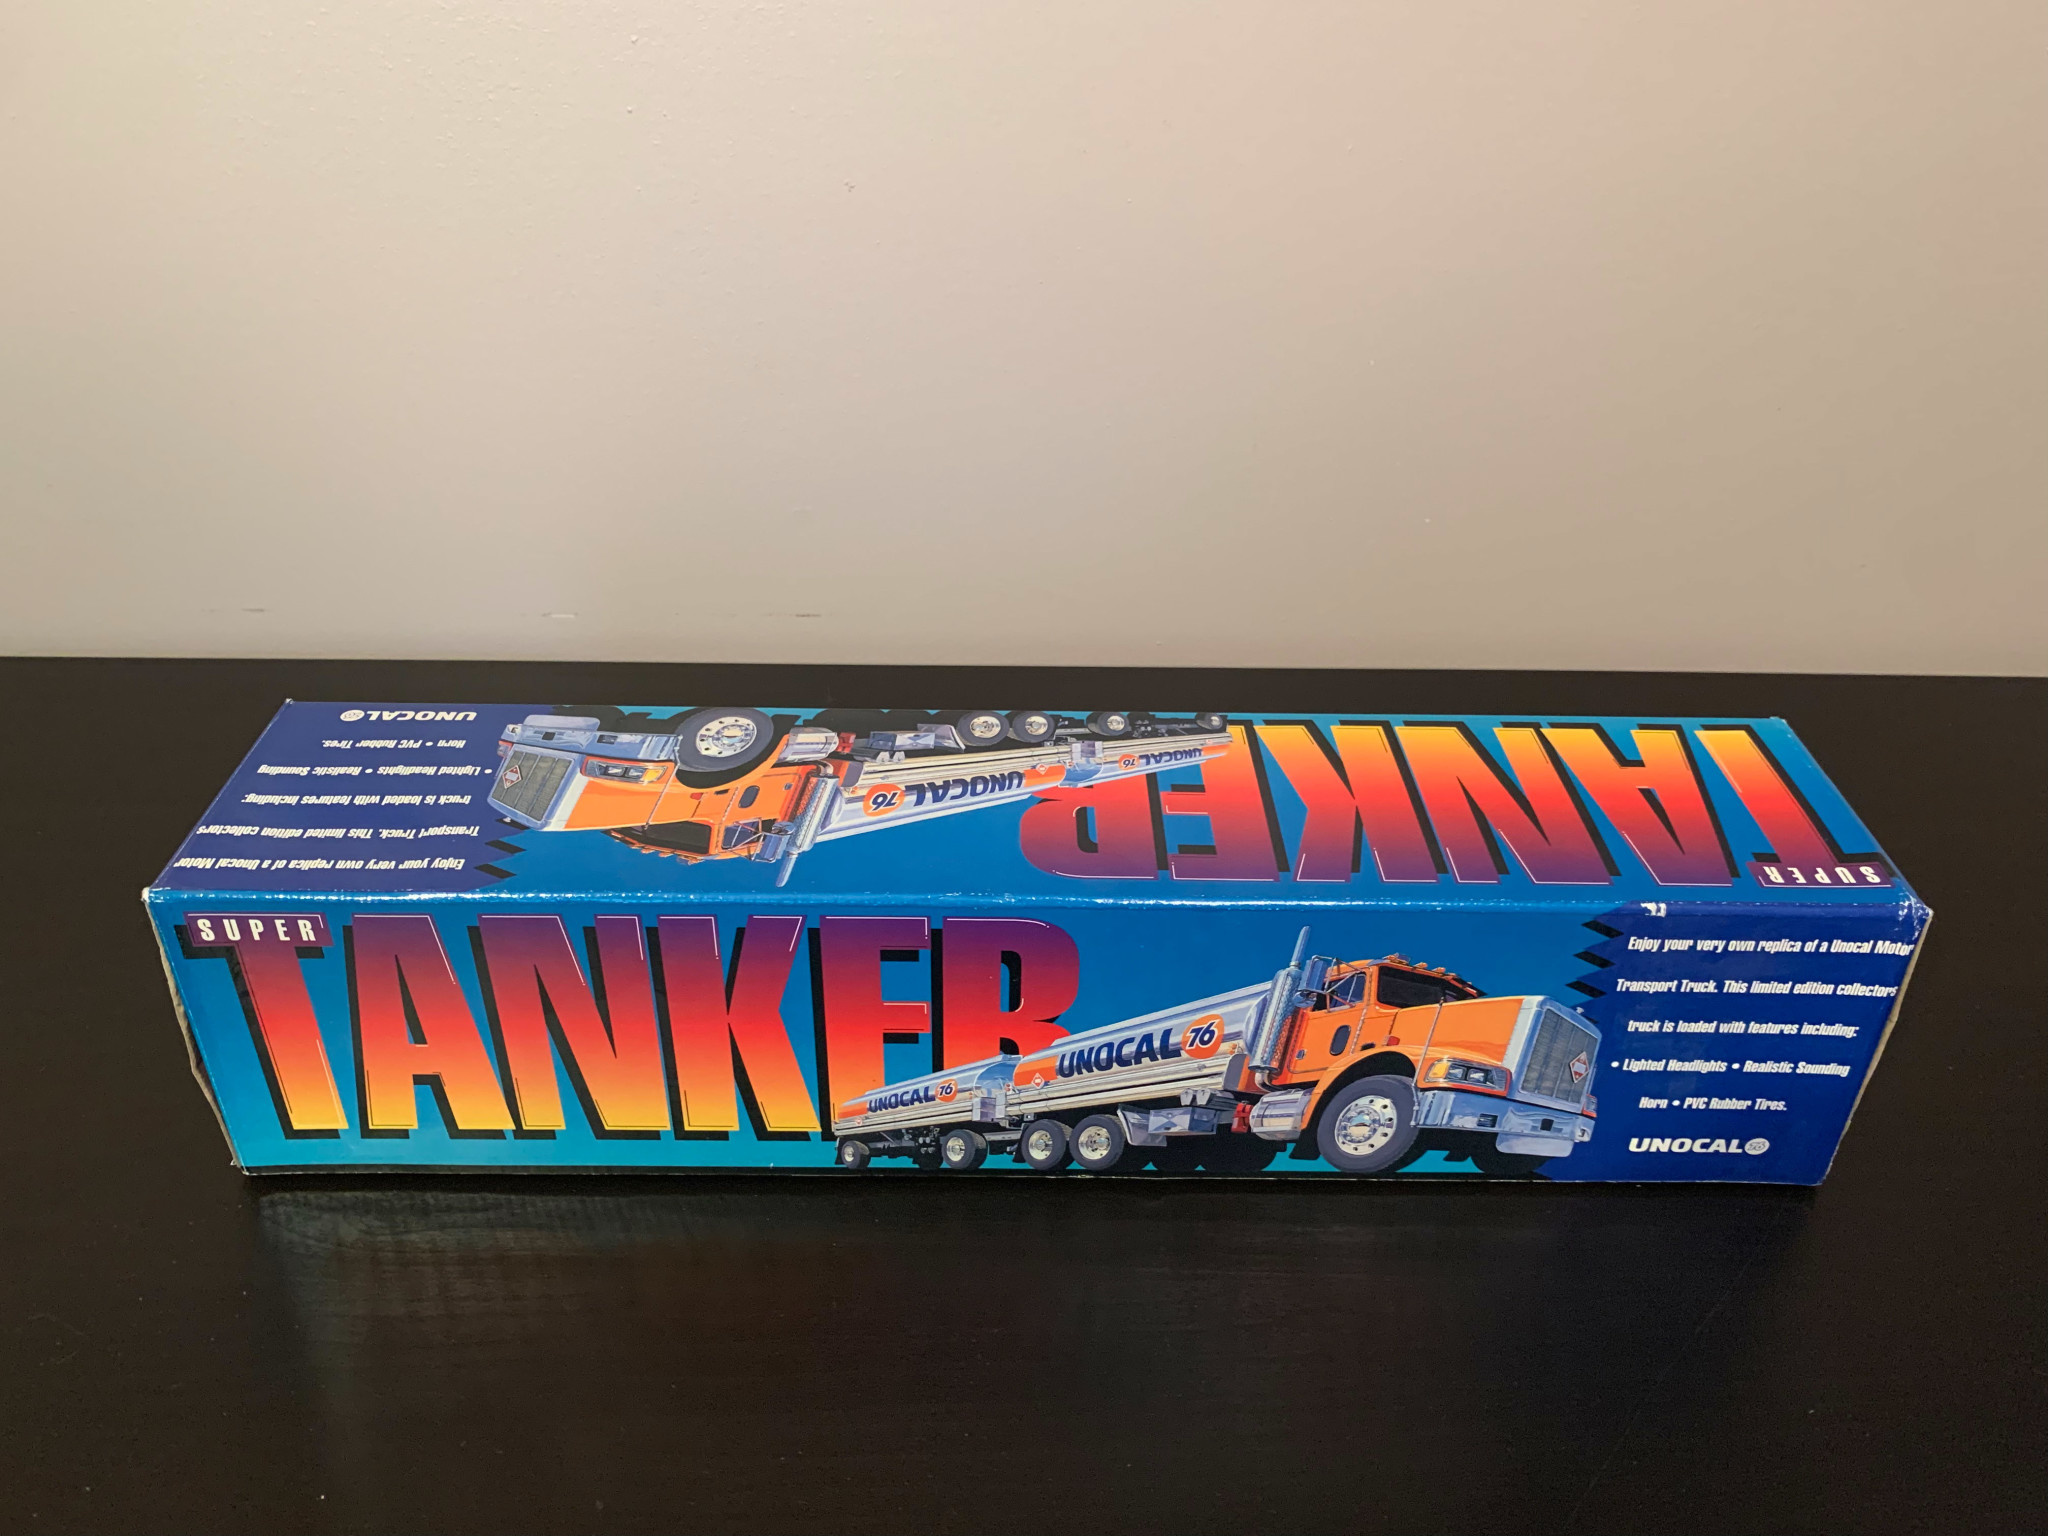 UNOCAL 76 SUPER TANKER Lights & Sound Transport Truck Plastic AdGap Group 1995